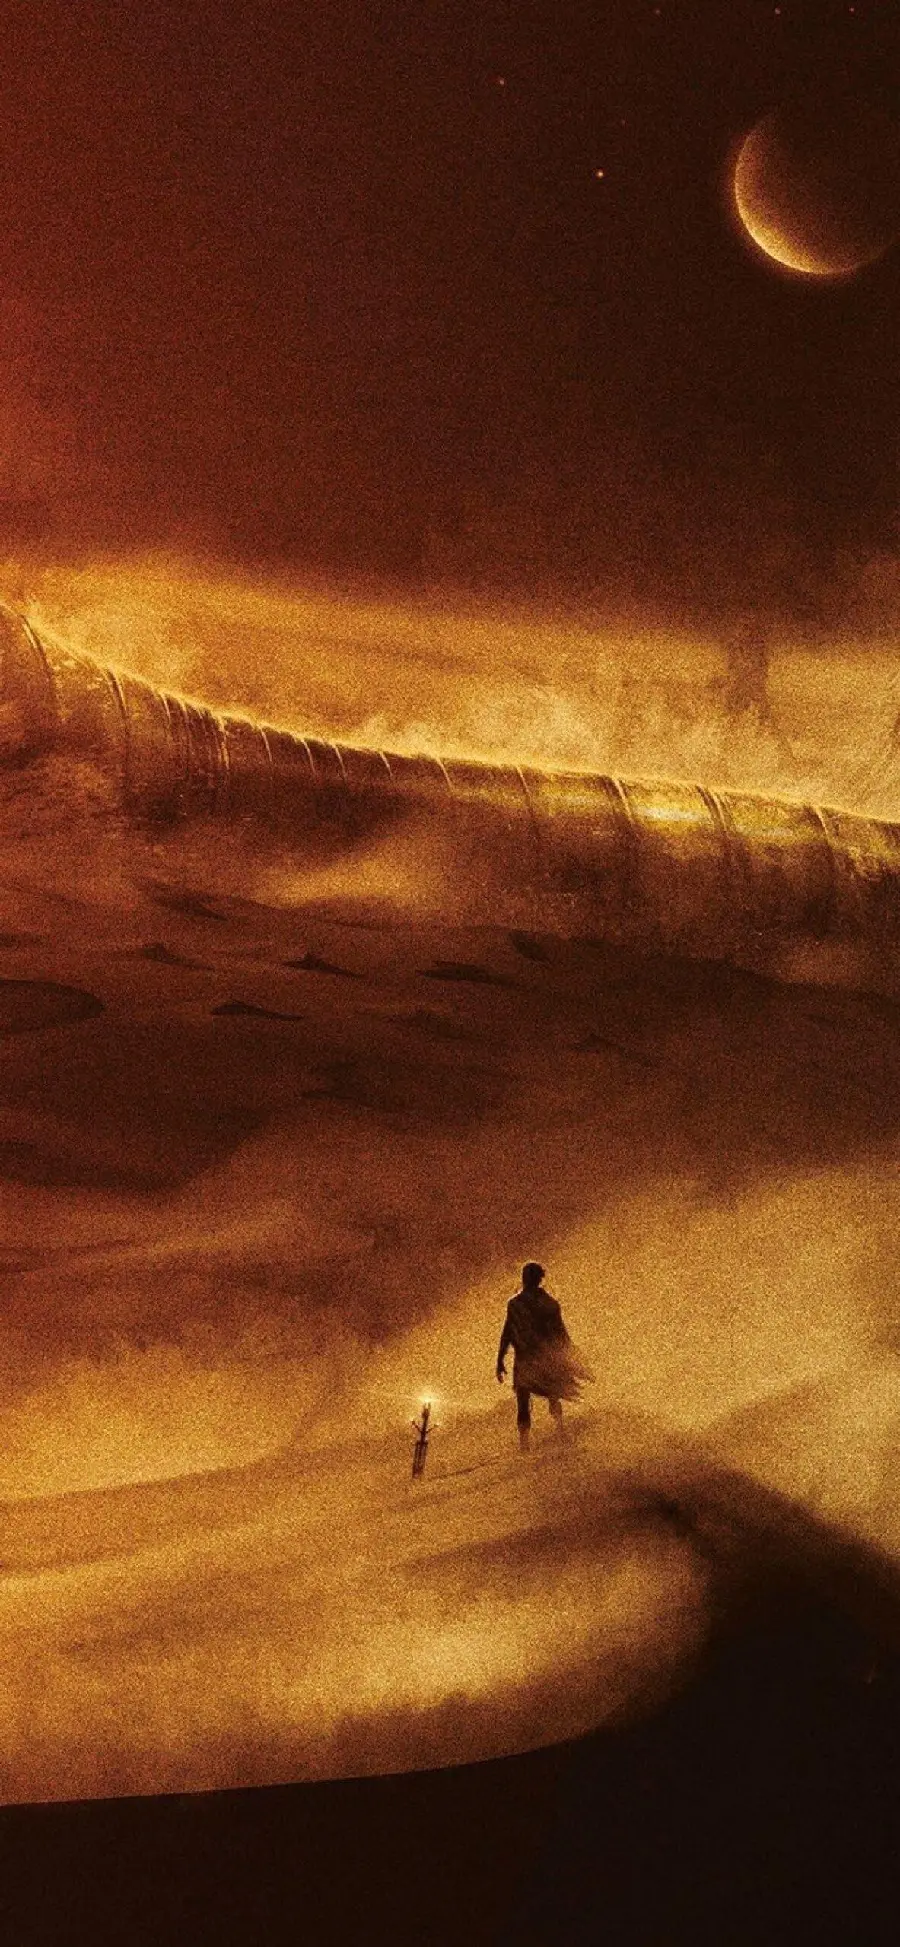 تصویر طراحی شده برای گوشی از فیلم جذاب تلماسه Dune 2